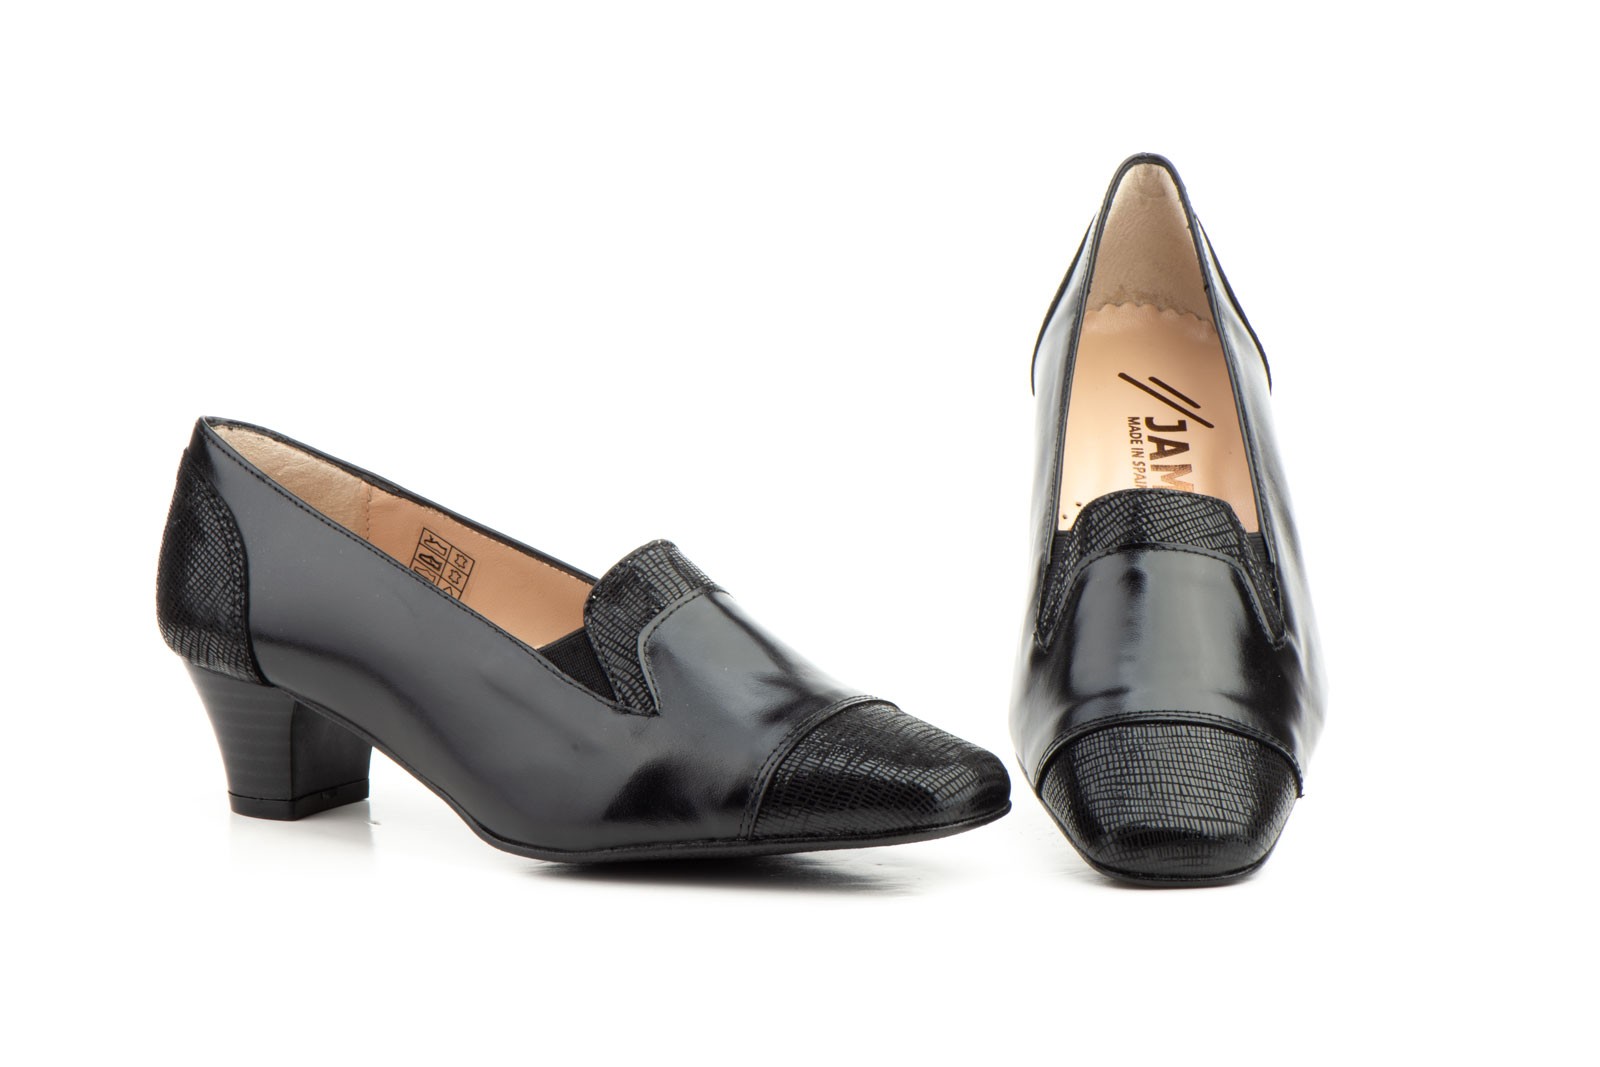 Zapatos Mujer Vestir Piel Negro Tacón